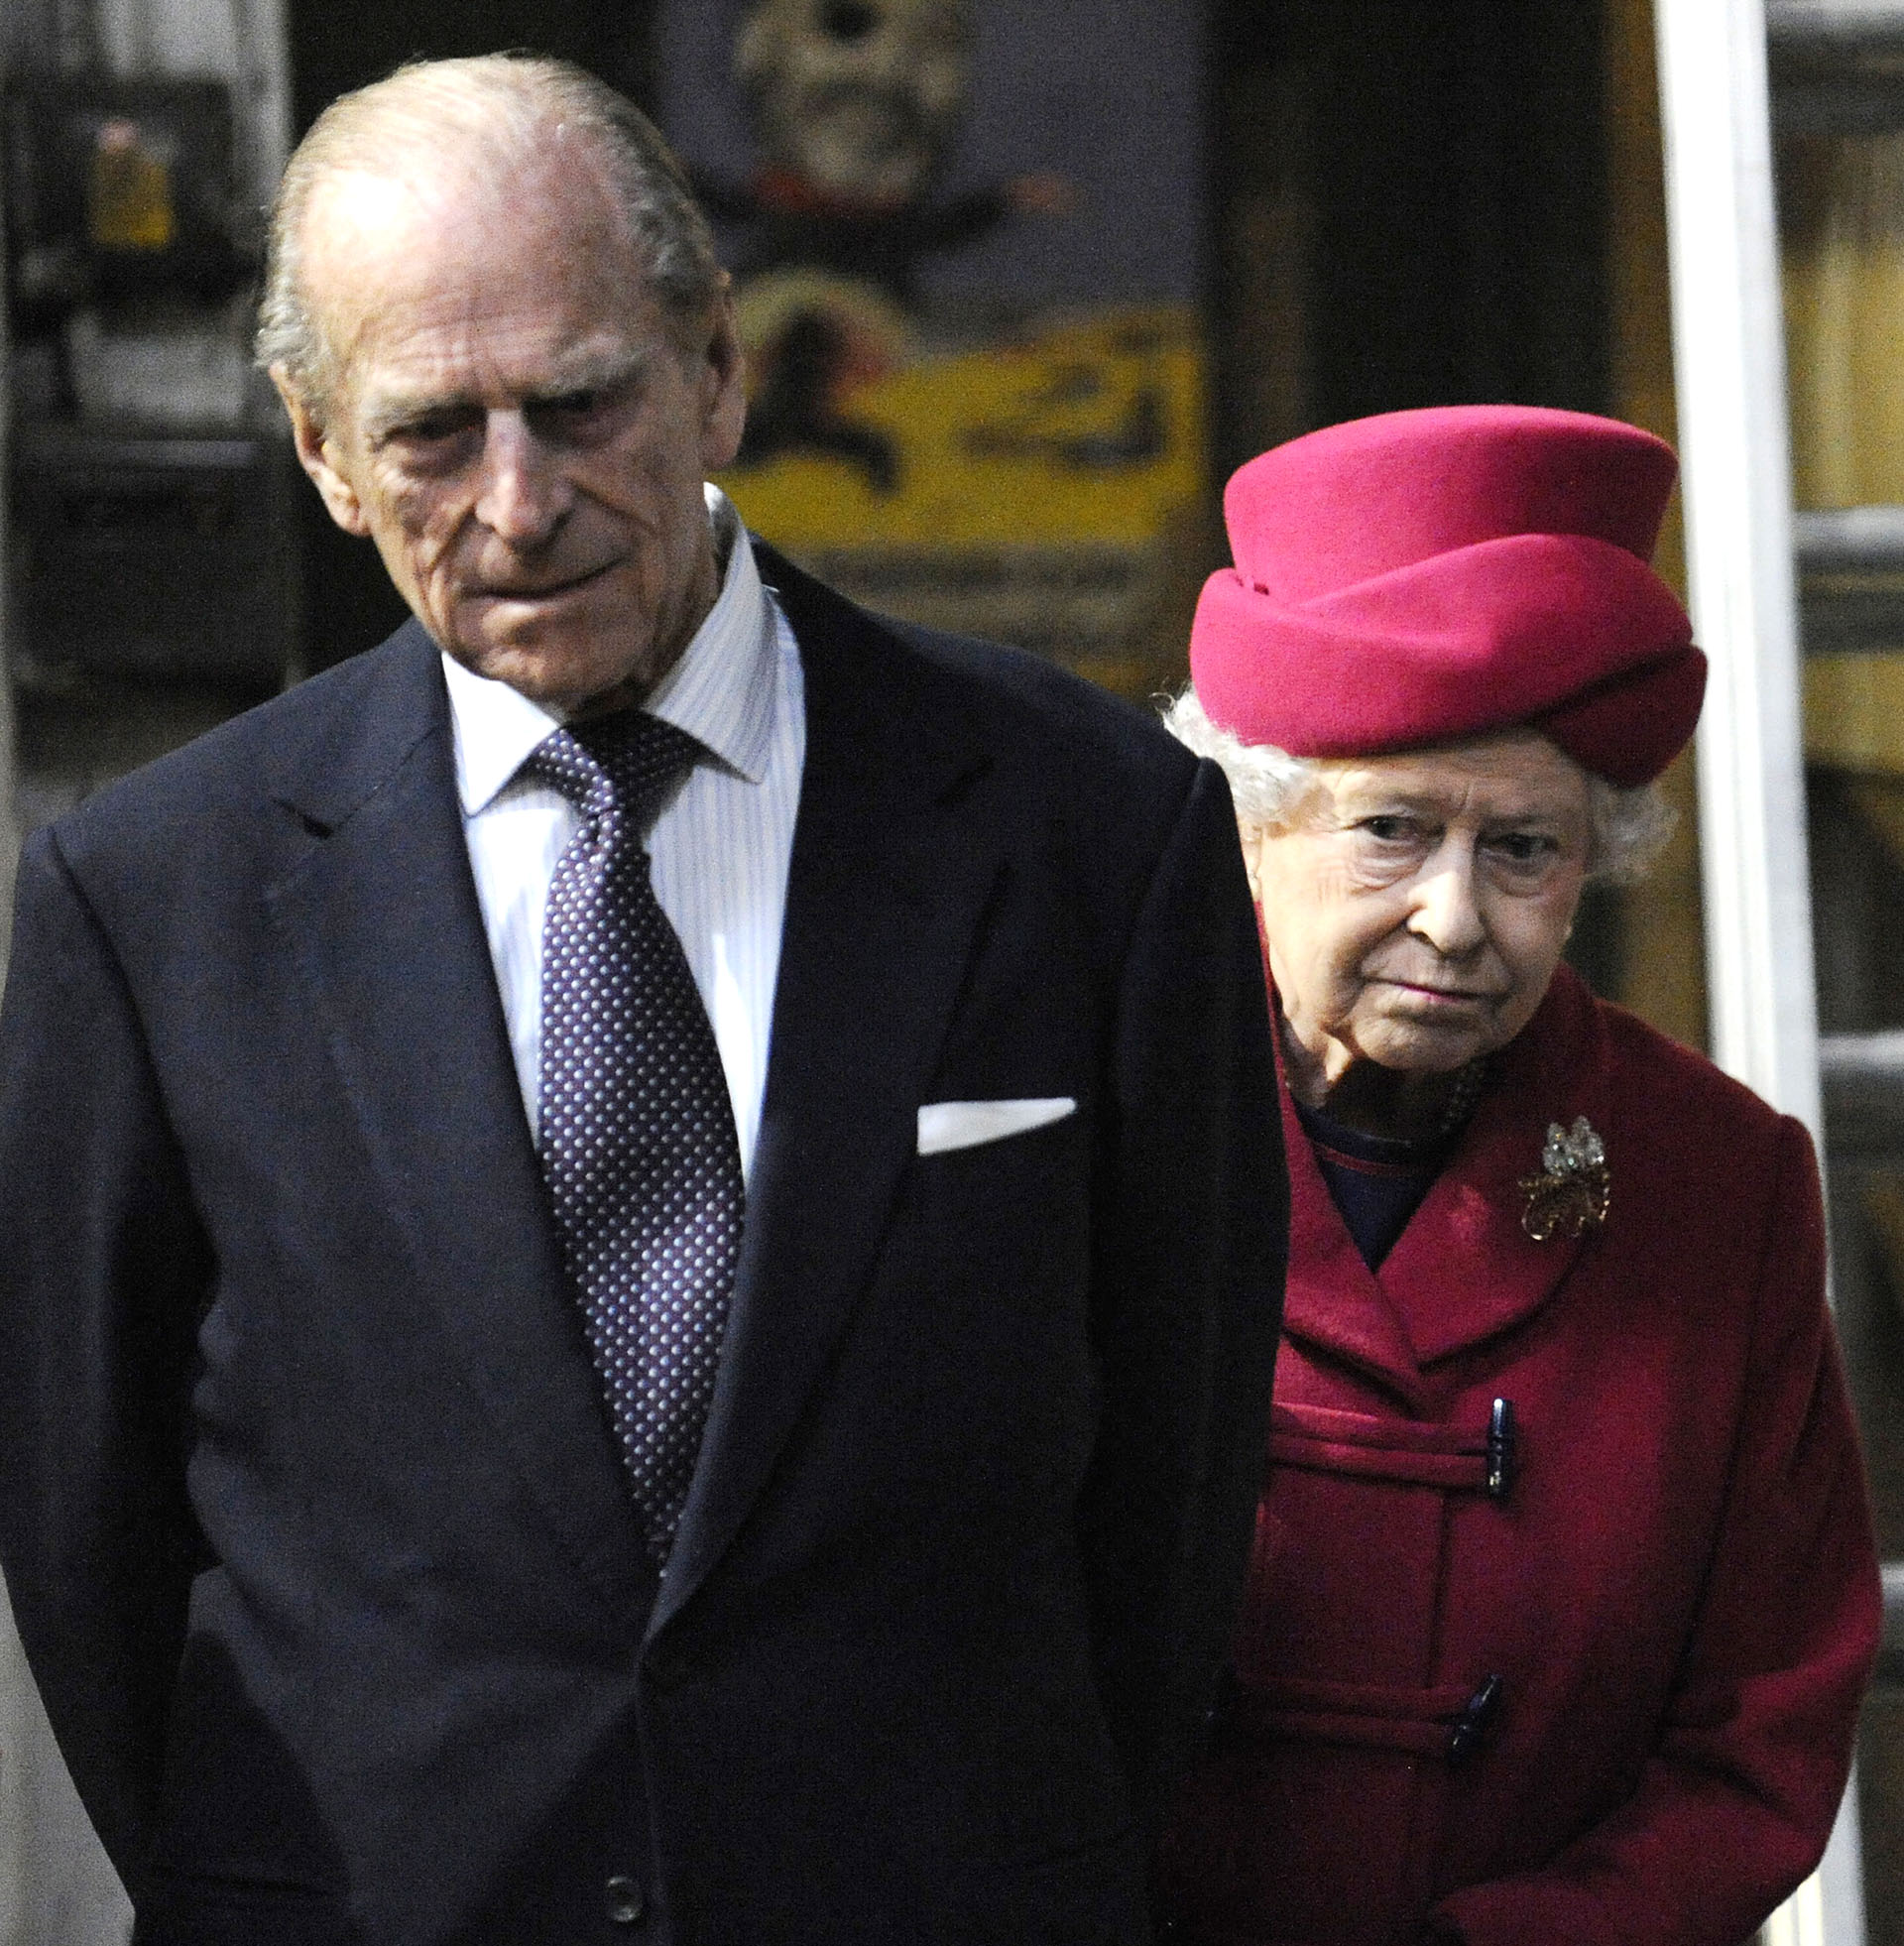 La casa real británica informó que el duque de Edimburgo falleció “pacíficamente” este viernes  9 de abril por la mañana, en el Castillo de Windsor. Tenía 99 años